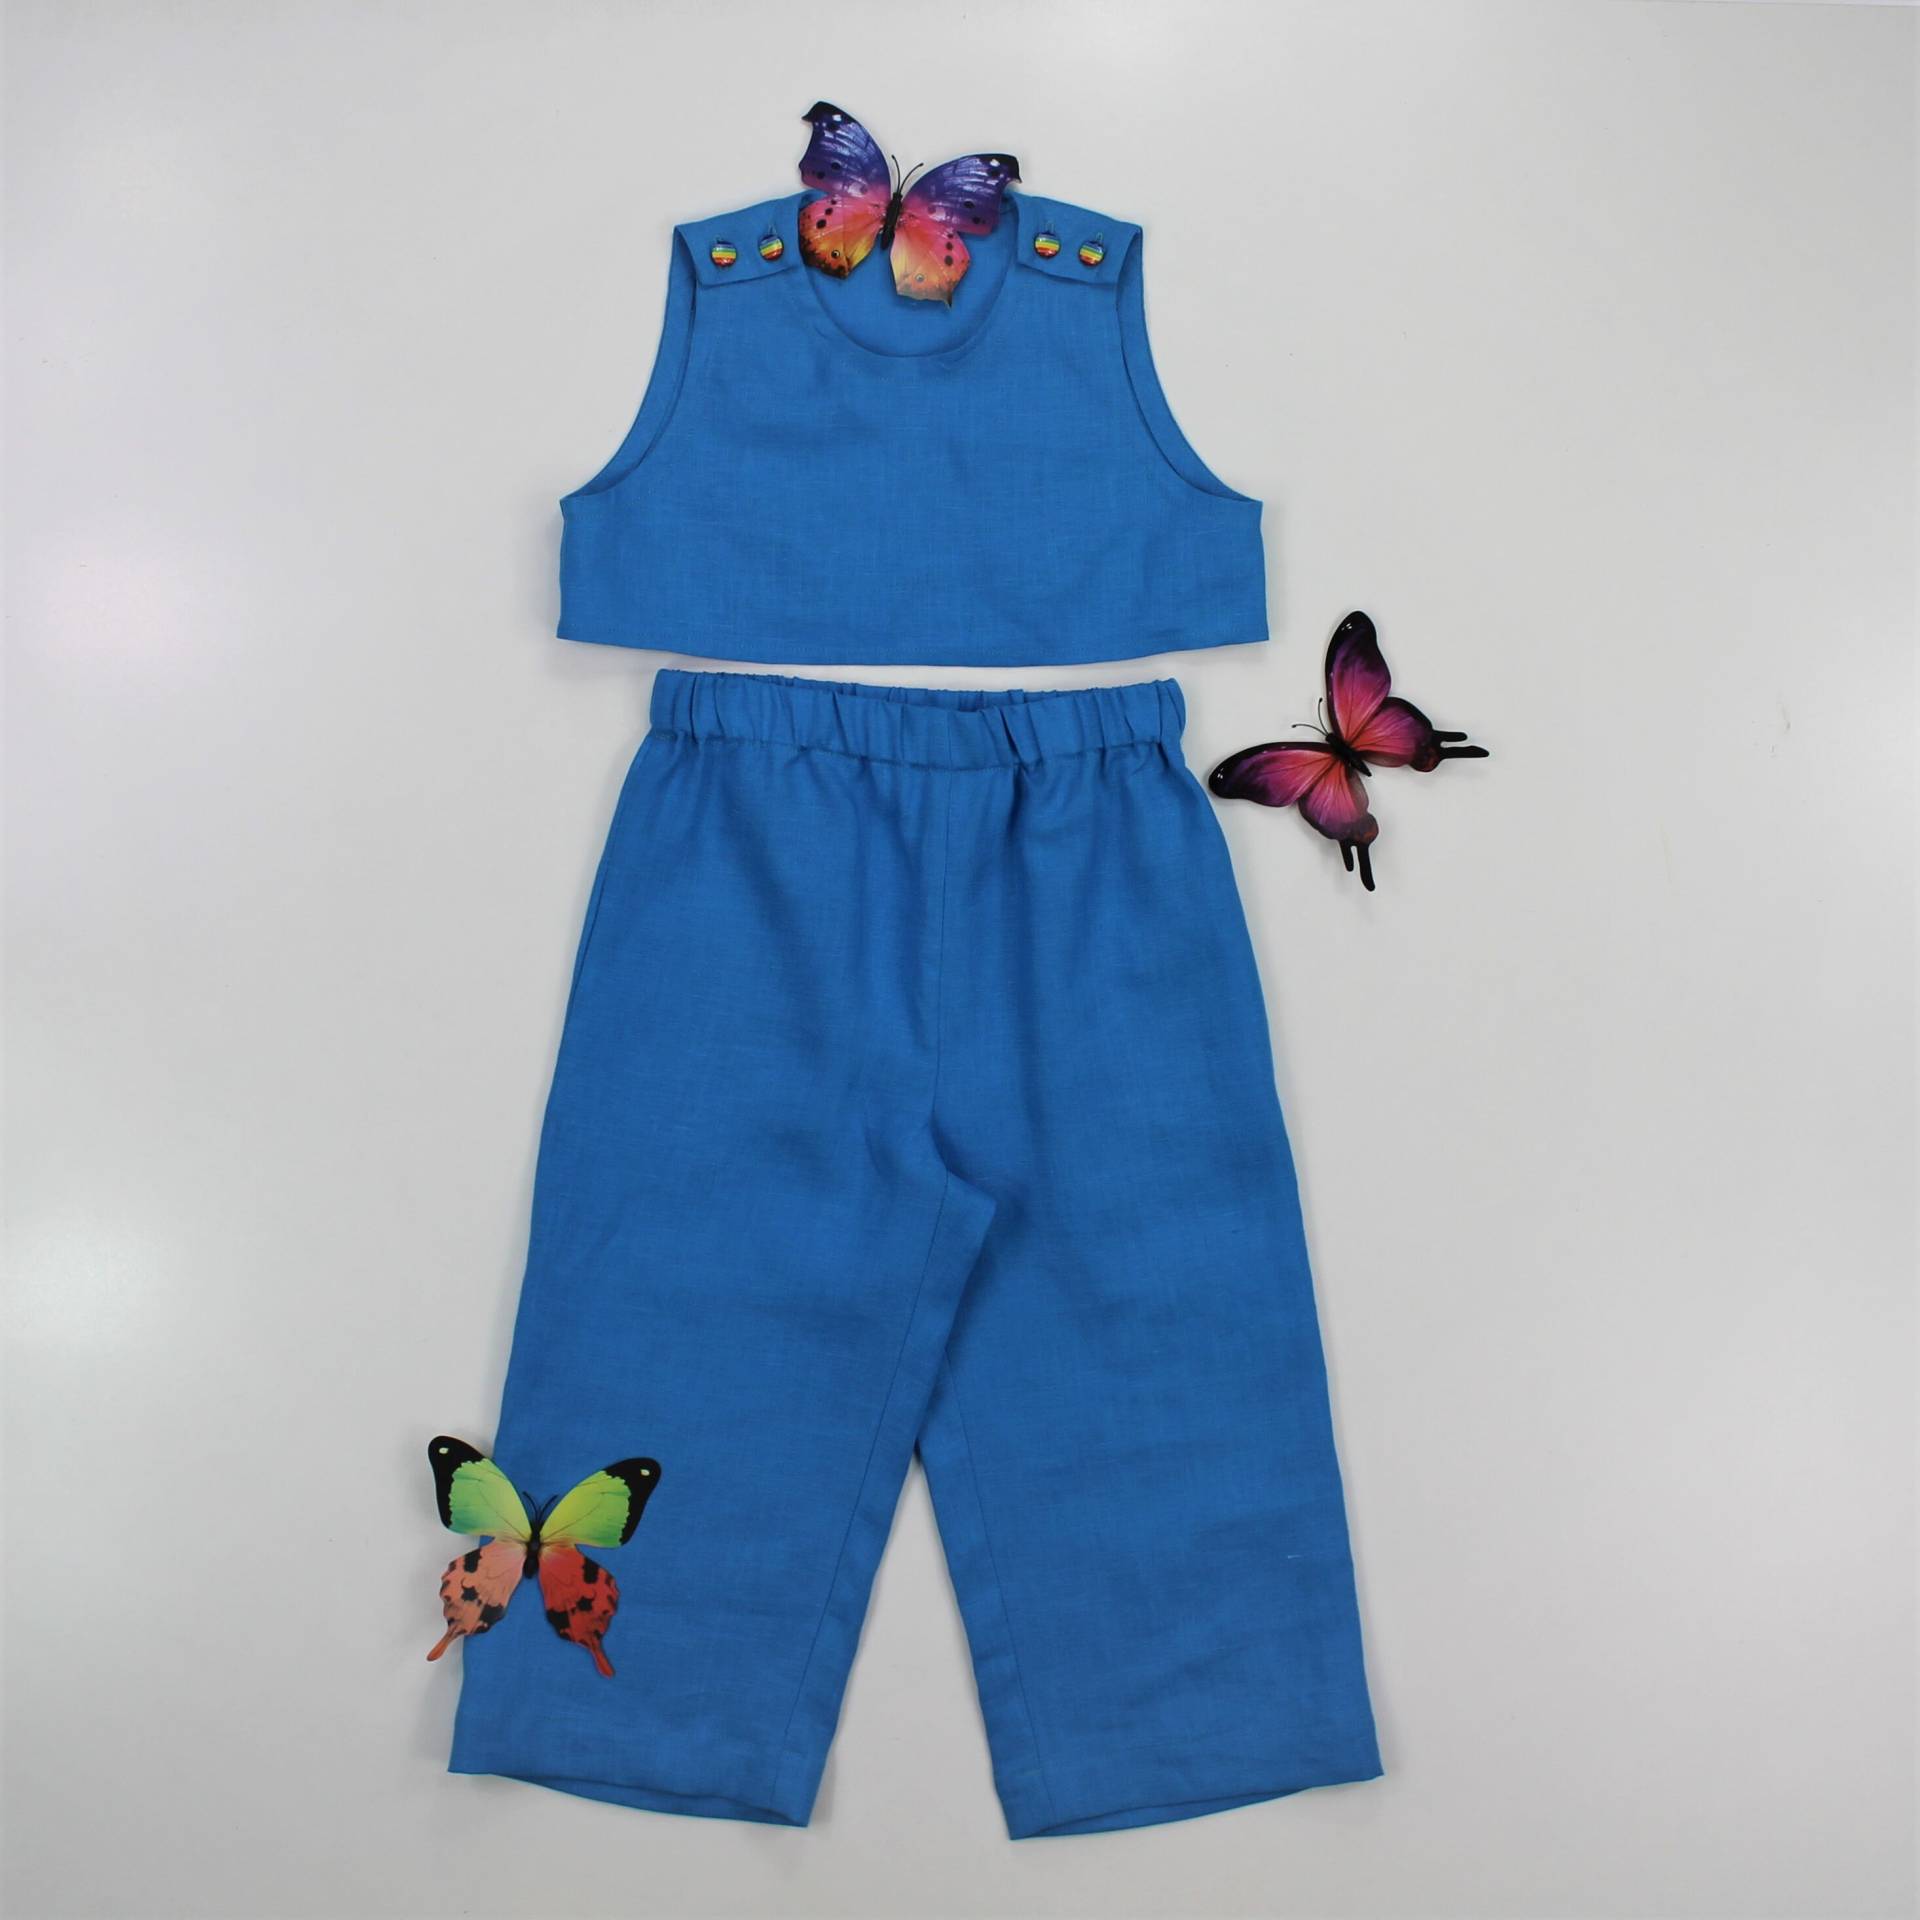 Kinder Leinen Set/Top Und Hose Kinderkleidung Zweiteiler Kleinkind Kleidung Spielset von linencity